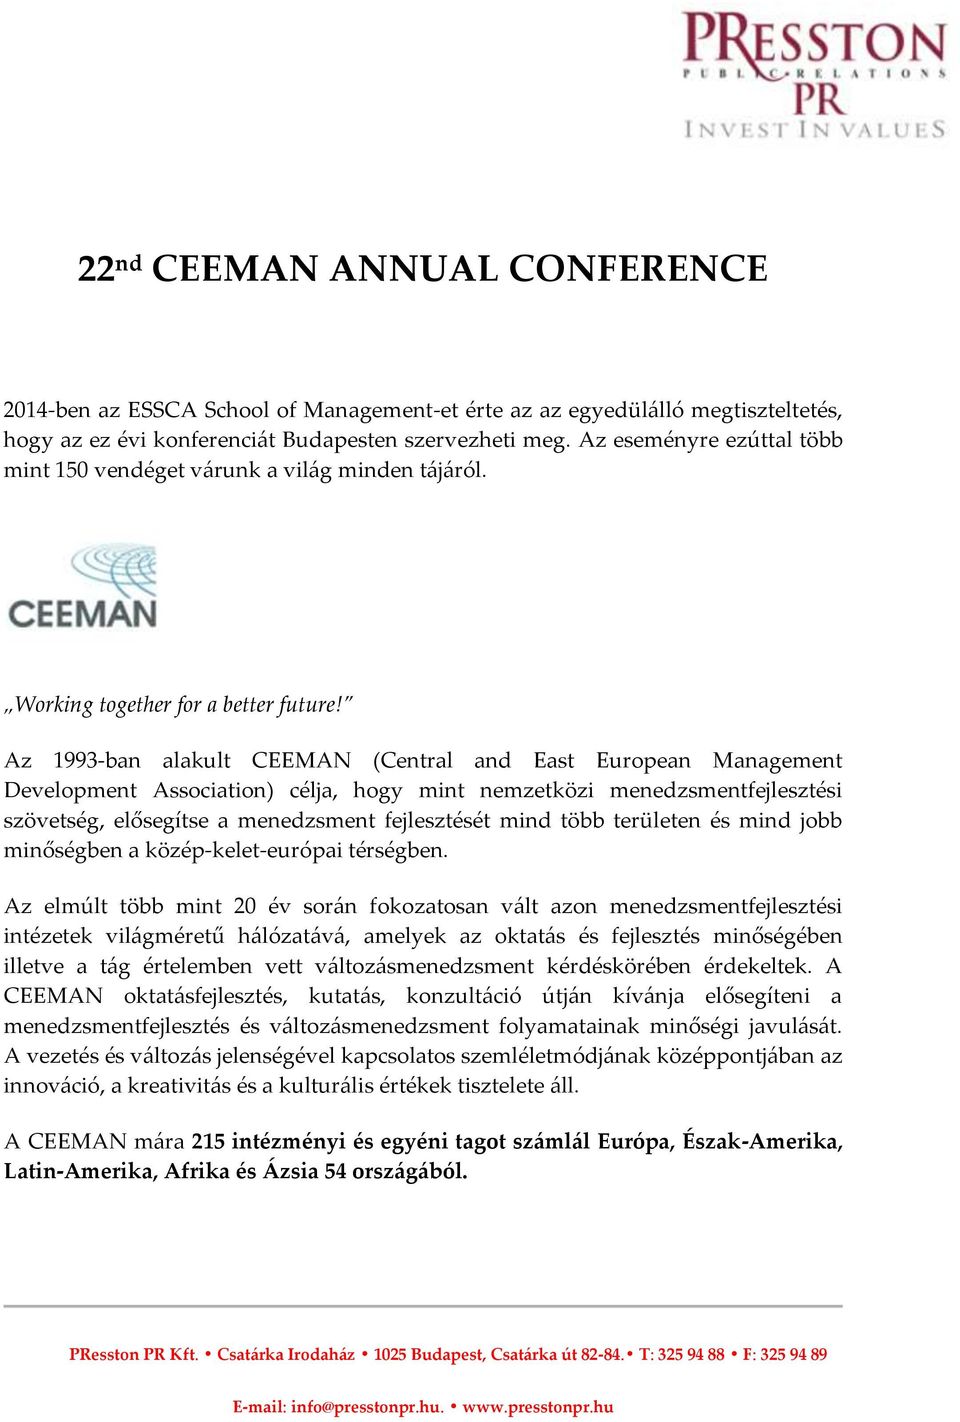 Az 1993-ban alakult CEEMAN (Central and East European Management Development Association) célja, hogy mint nemzetközi menedzsmentfejlesztési szövetség, elősegítse a menedzsment fejlesztését mind több